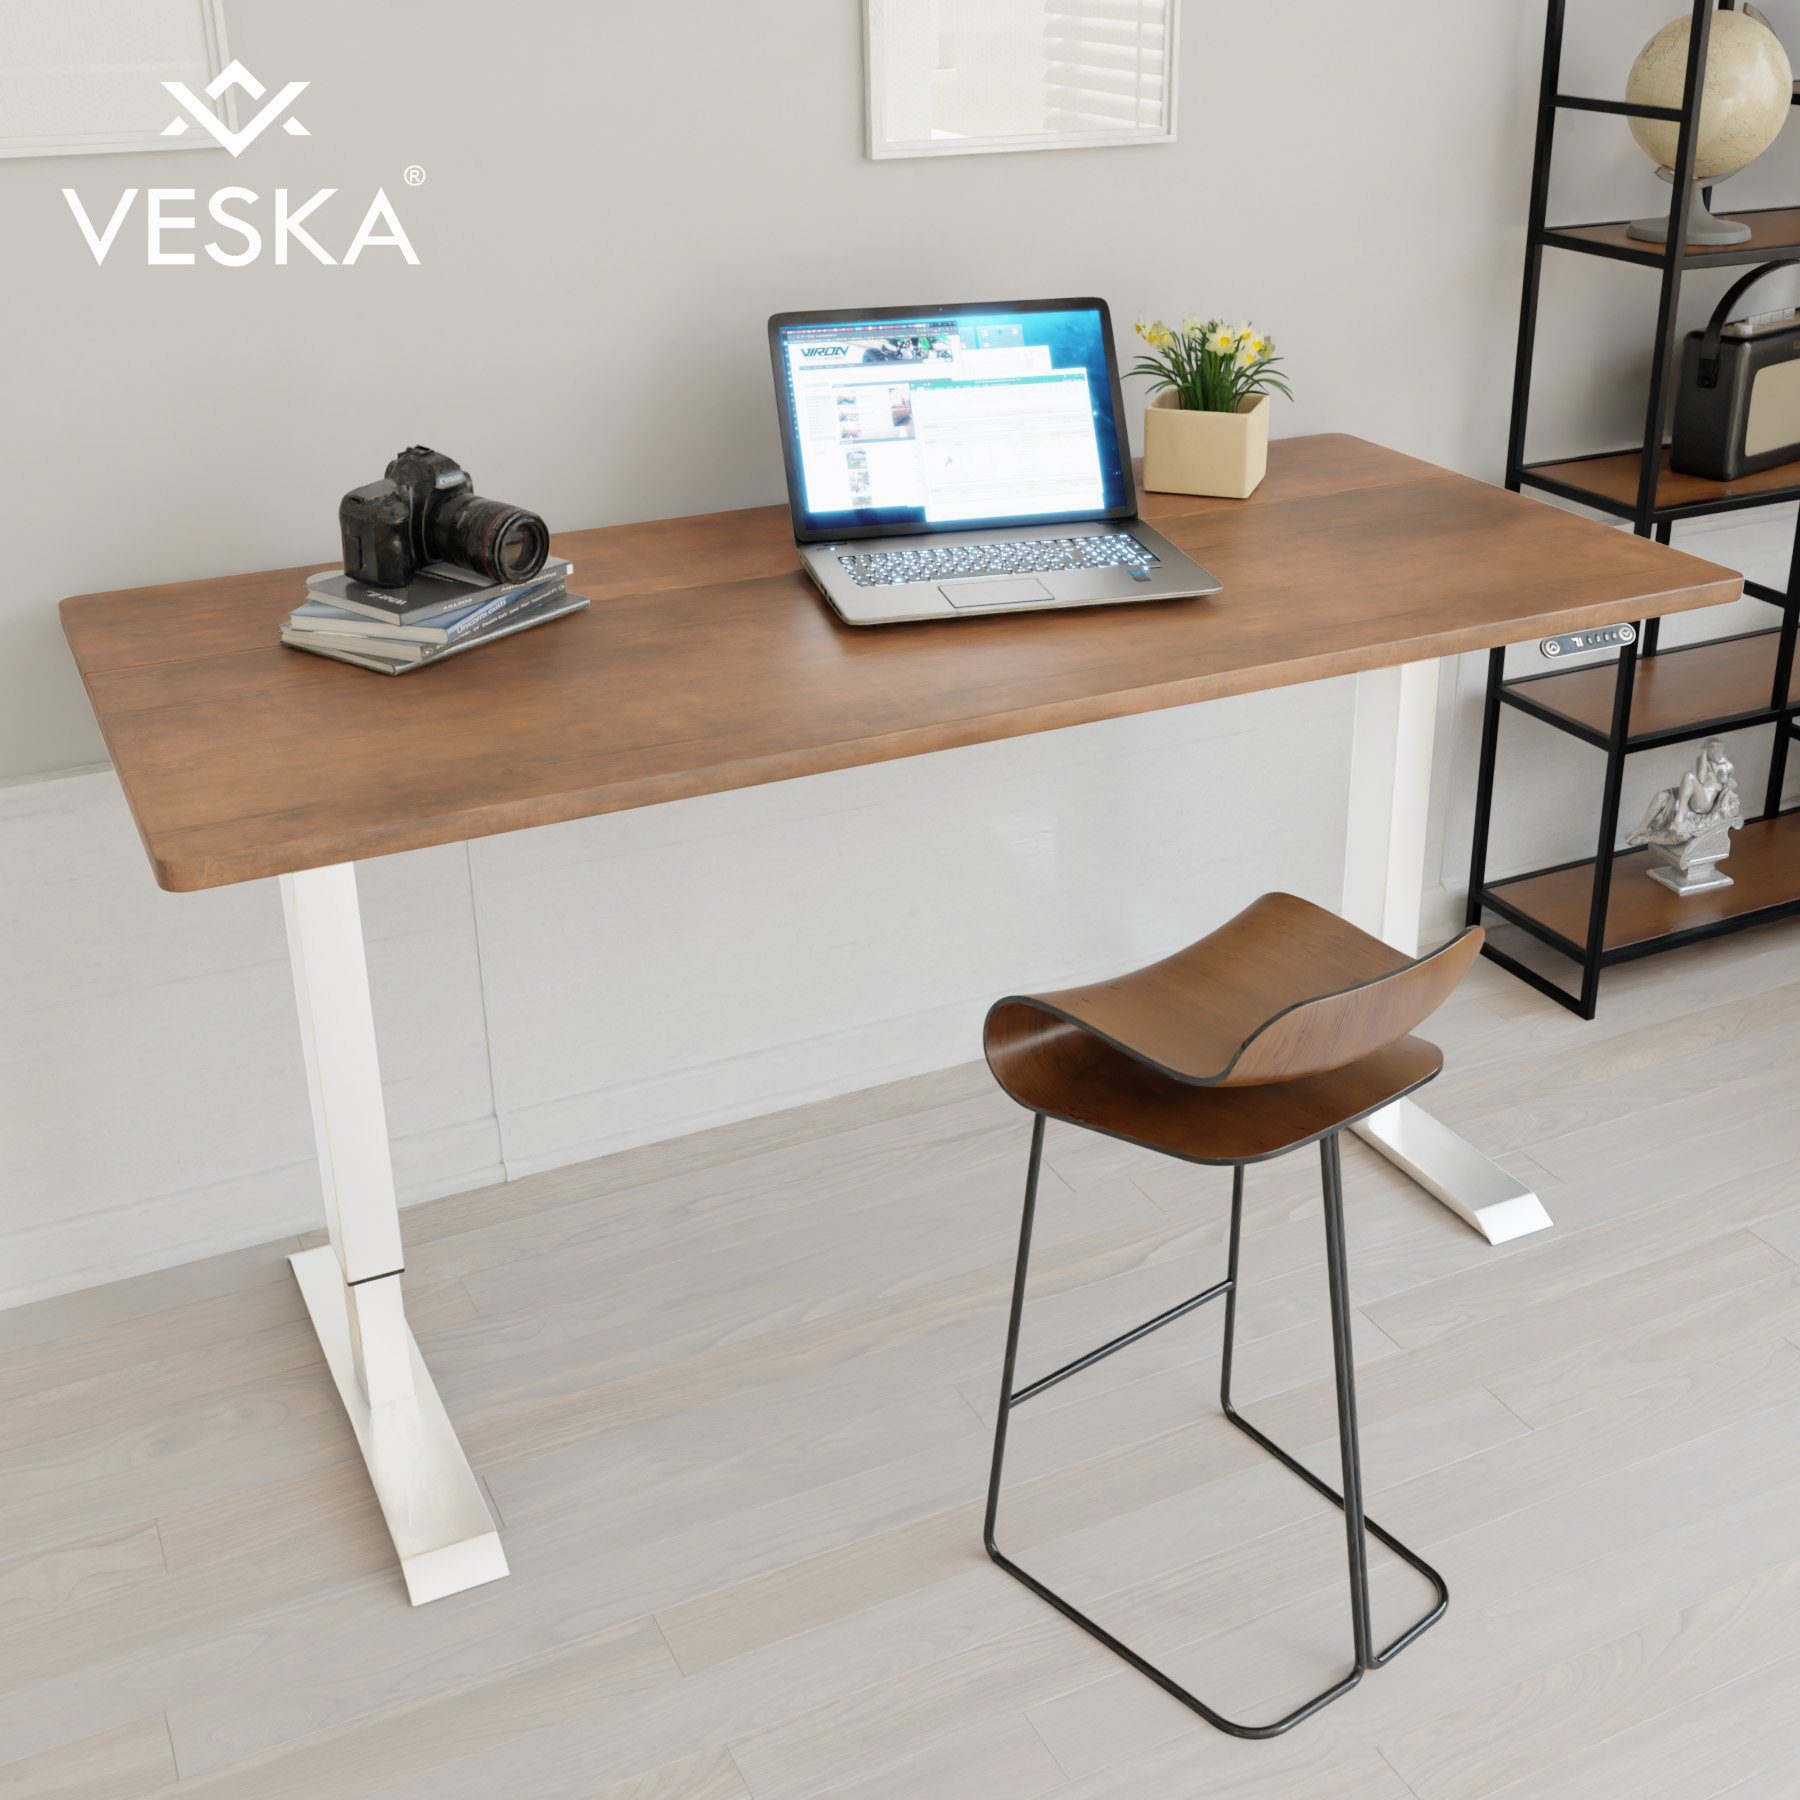 VESKA Schreibtisch Höhenverstellbar 140 x 70 cm - Bürotisch Elektrisch mit Touchscreen - Sitz- & Stehpult Home Office Weiß | Antik